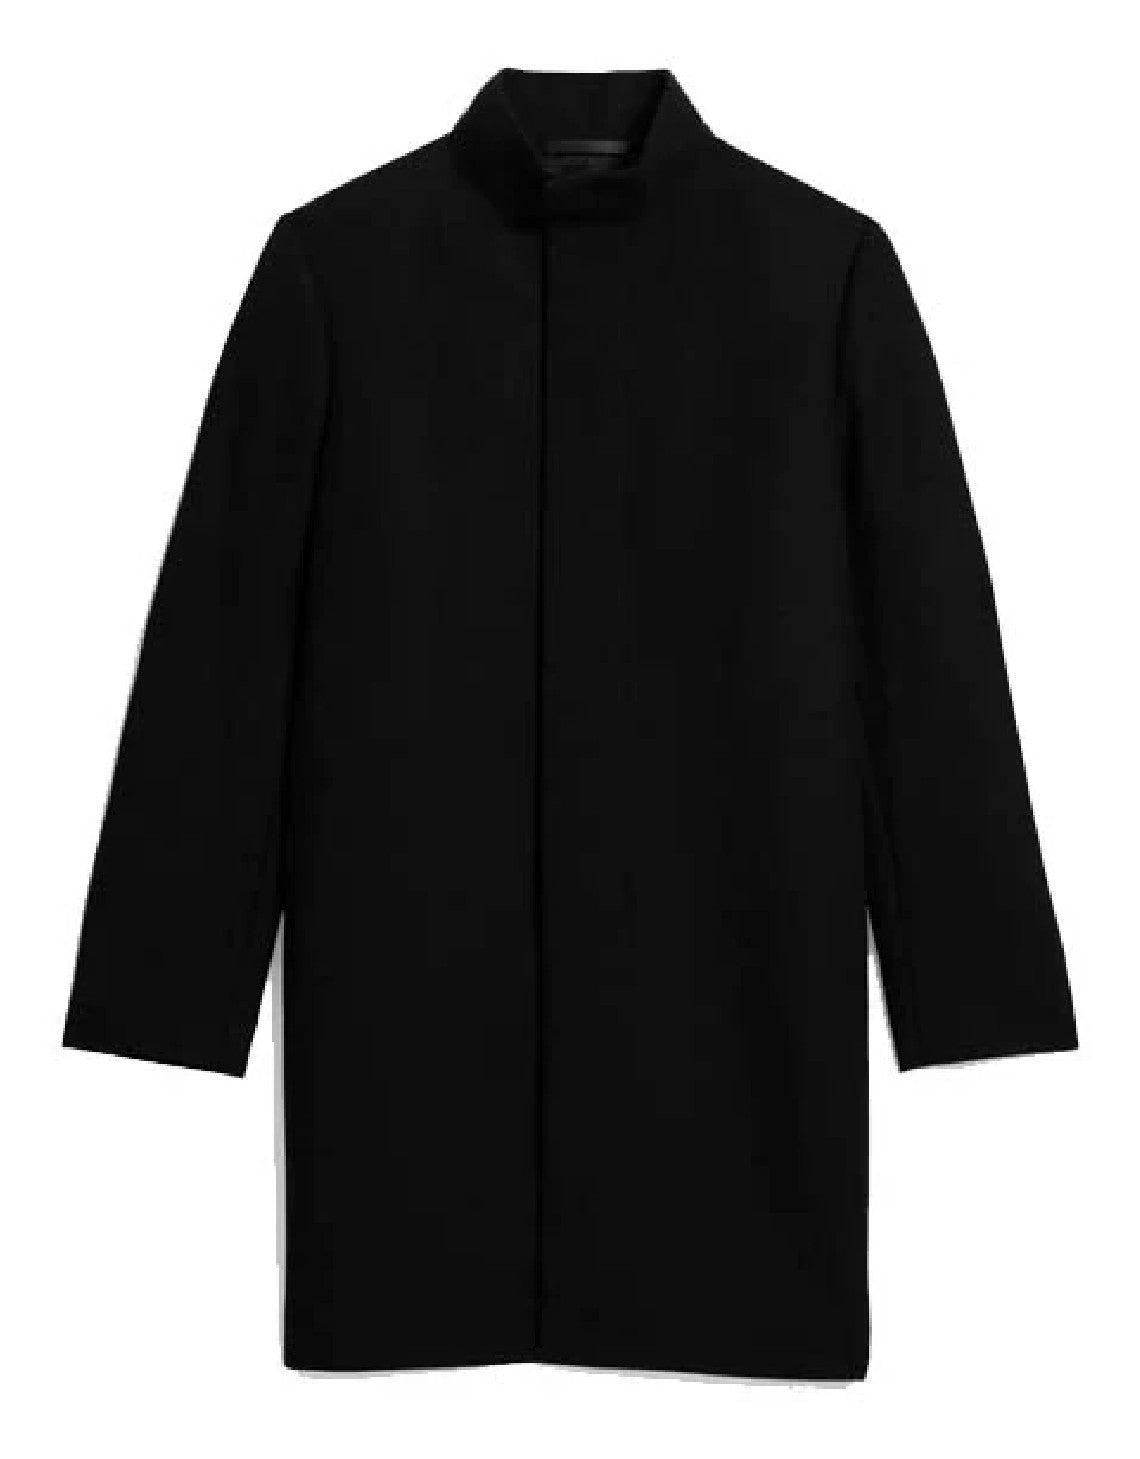 Theory Belvin Coat In Melton Wool Black for Men | Lyst